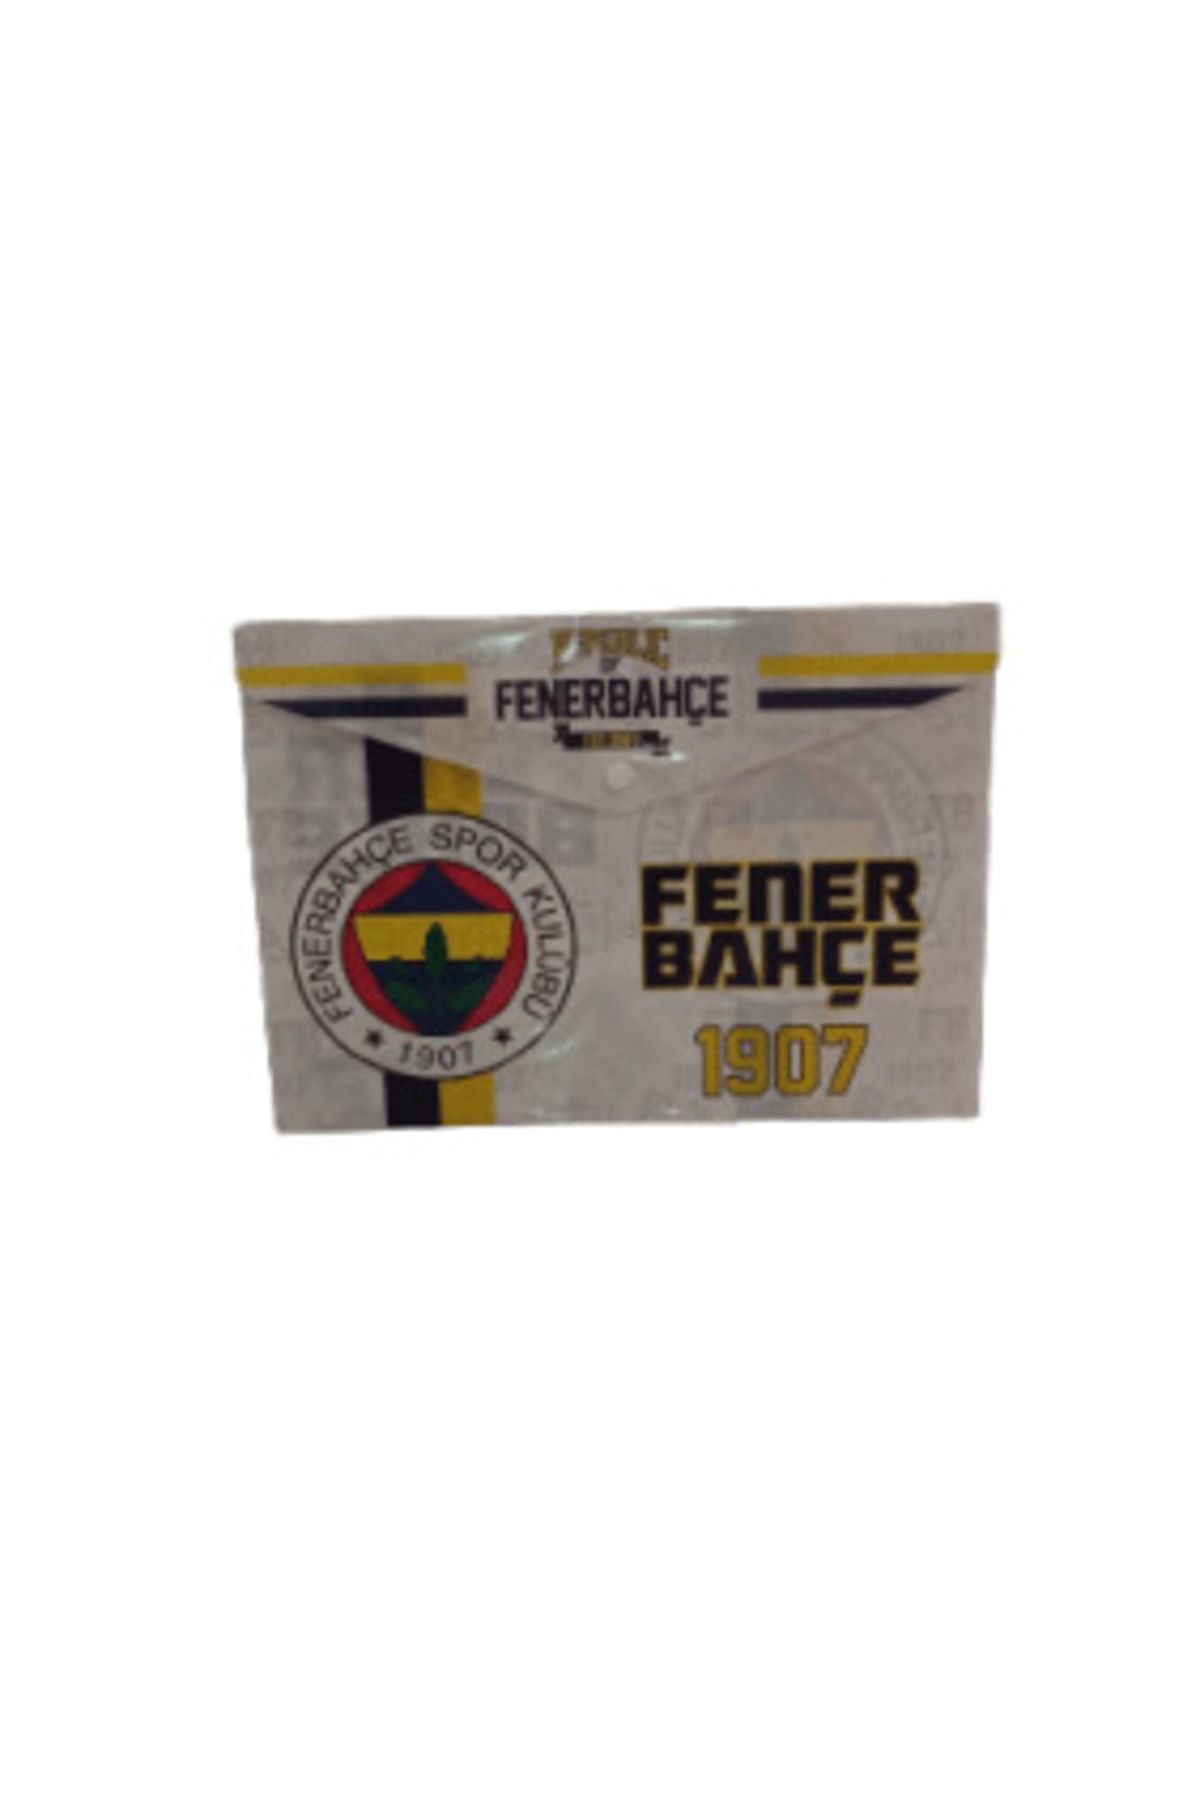 Fenerbahçe A4 Zarf Çıtçıtlı Dosya